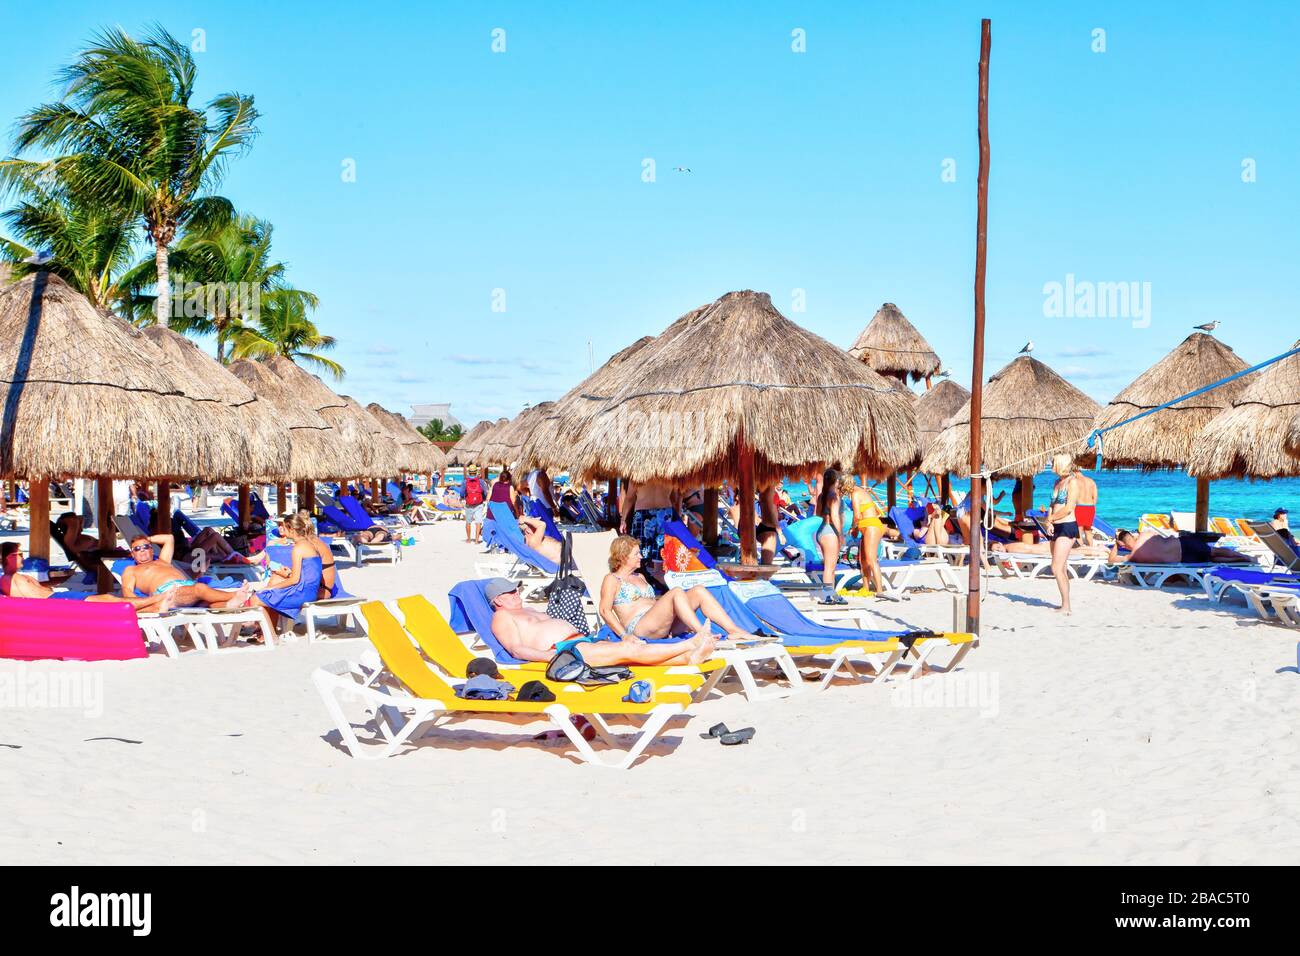 Riviera Maya, Mexique - 22 décembre 2019: Les amateurs de plage affluent vers les plages tropicales de Riviera Maya près de Cancun, Mexique, pendant la populaire escapade hivernale Banque D'Images